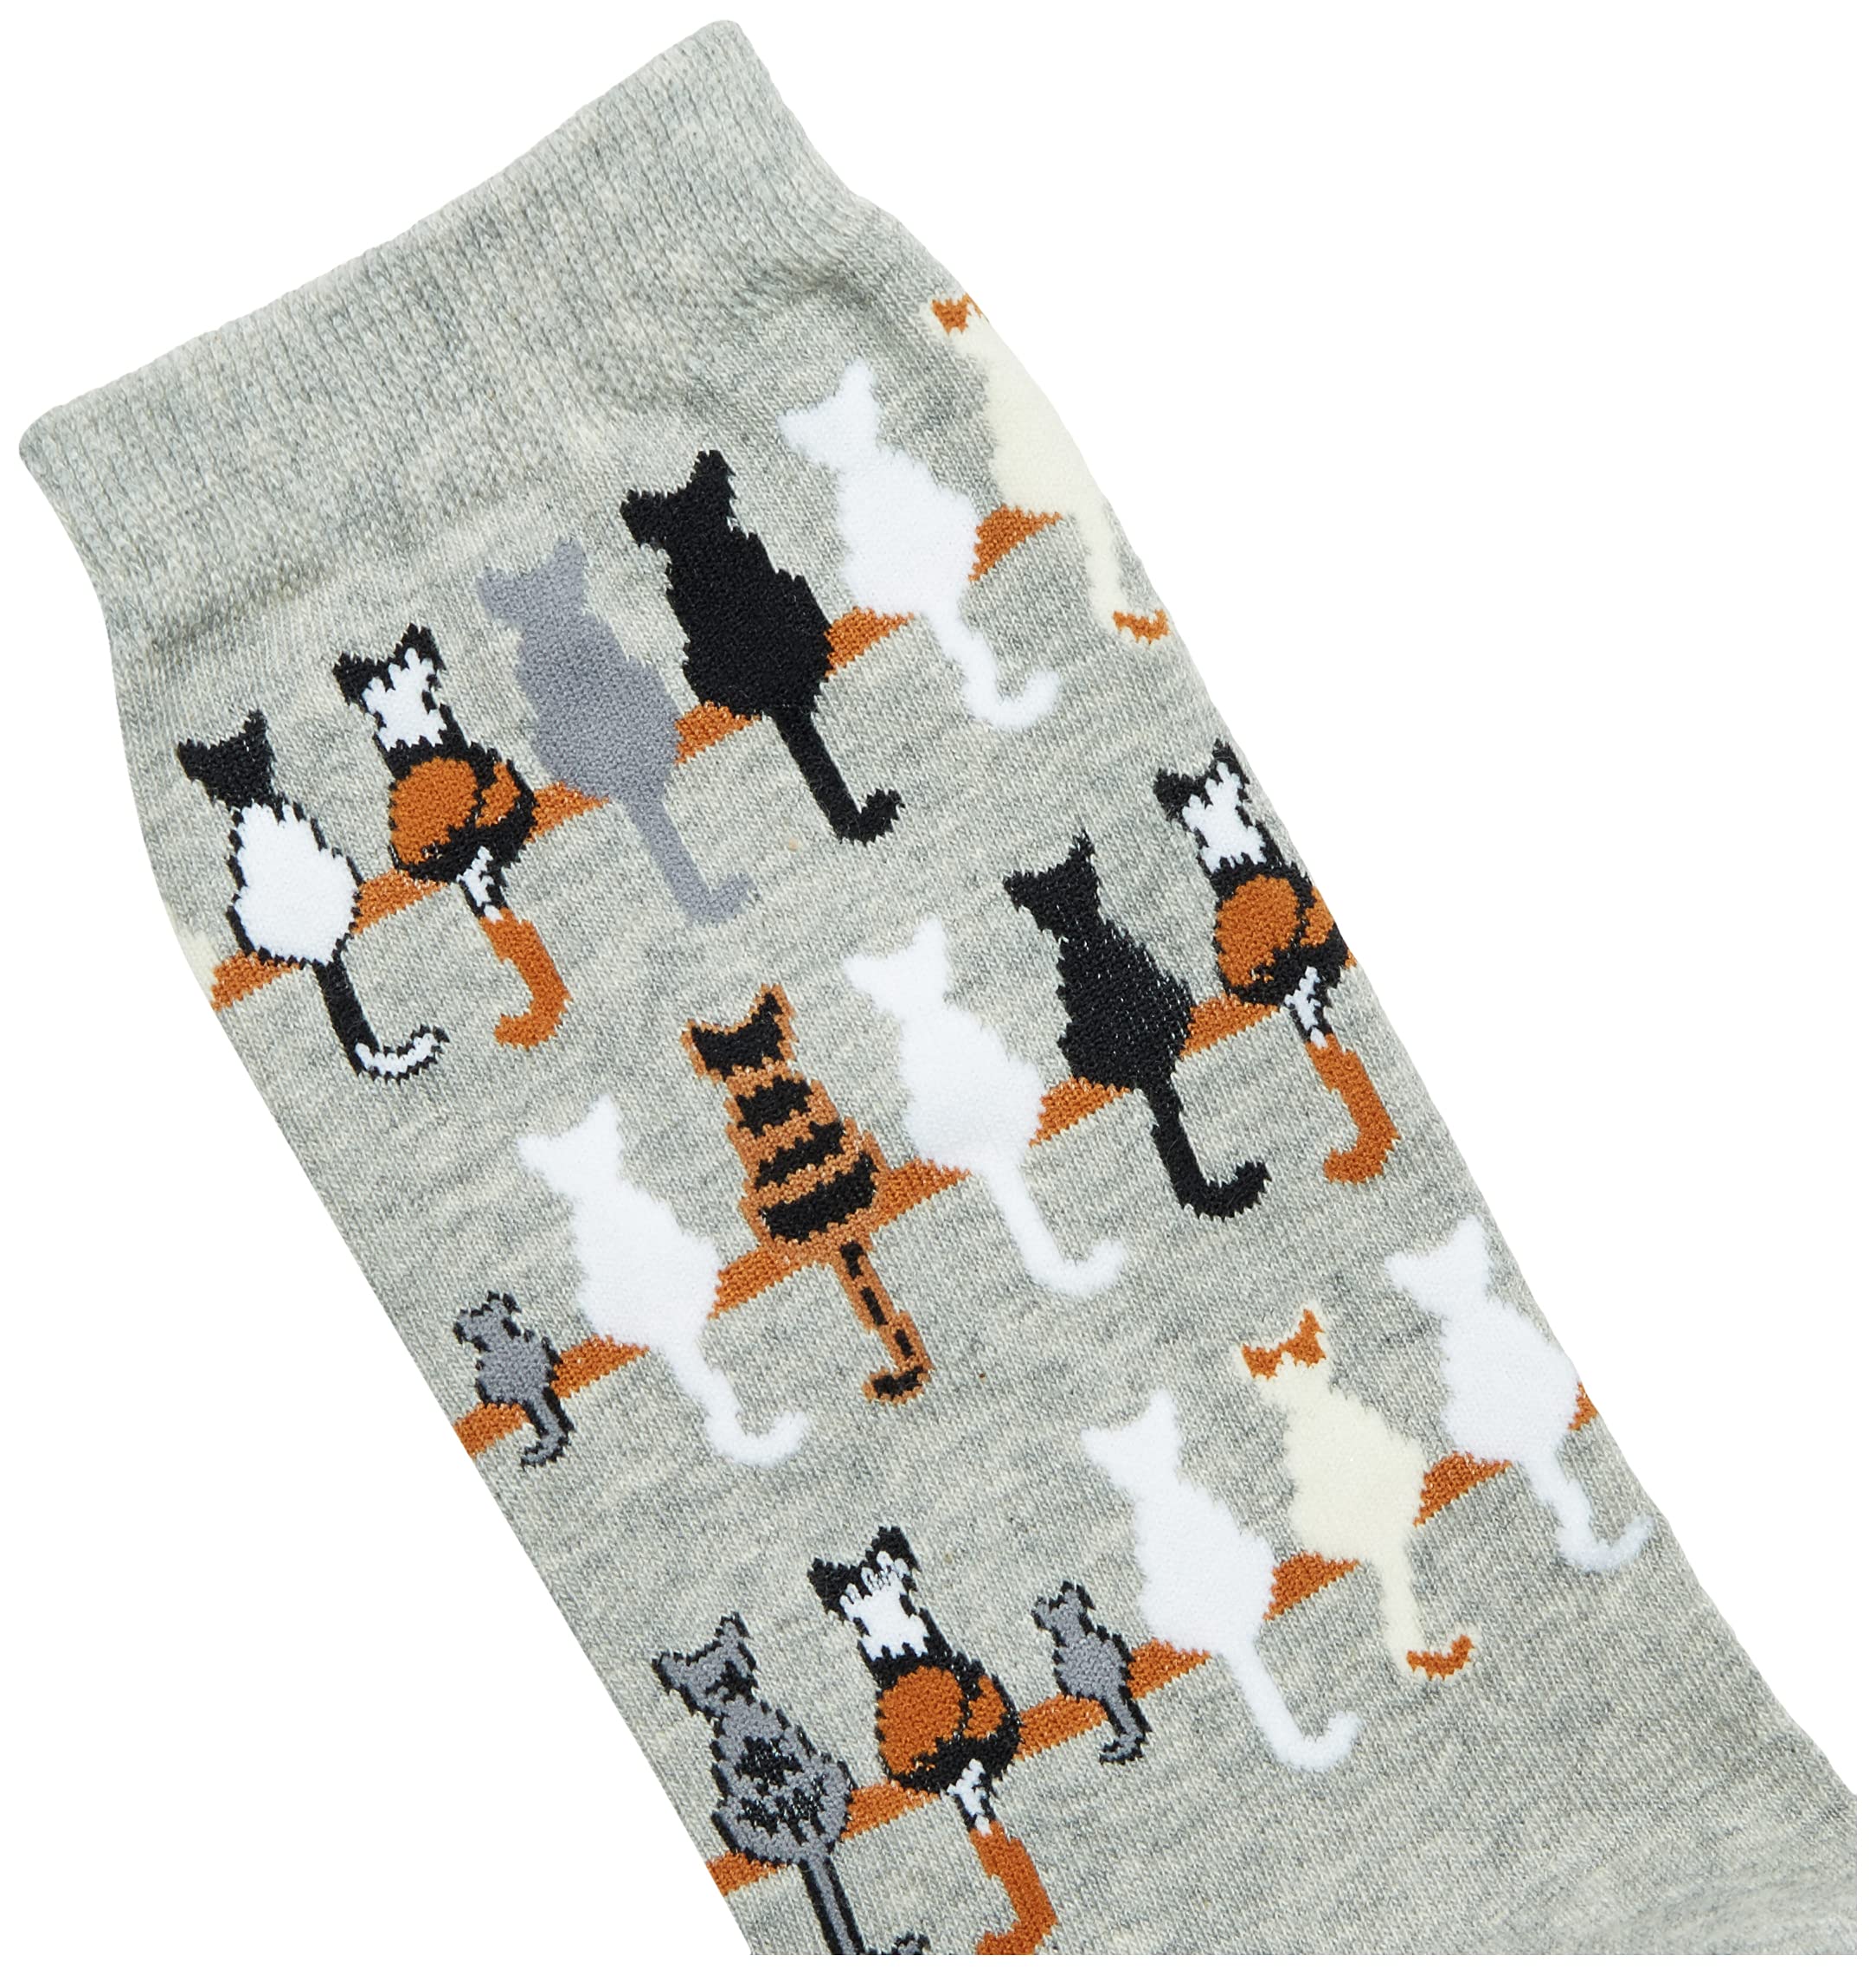 K. Bell Women's Lover's Fun & Cute Novelty Crew Socks, Cat Tails (Grey), Shoe Size: 4-10